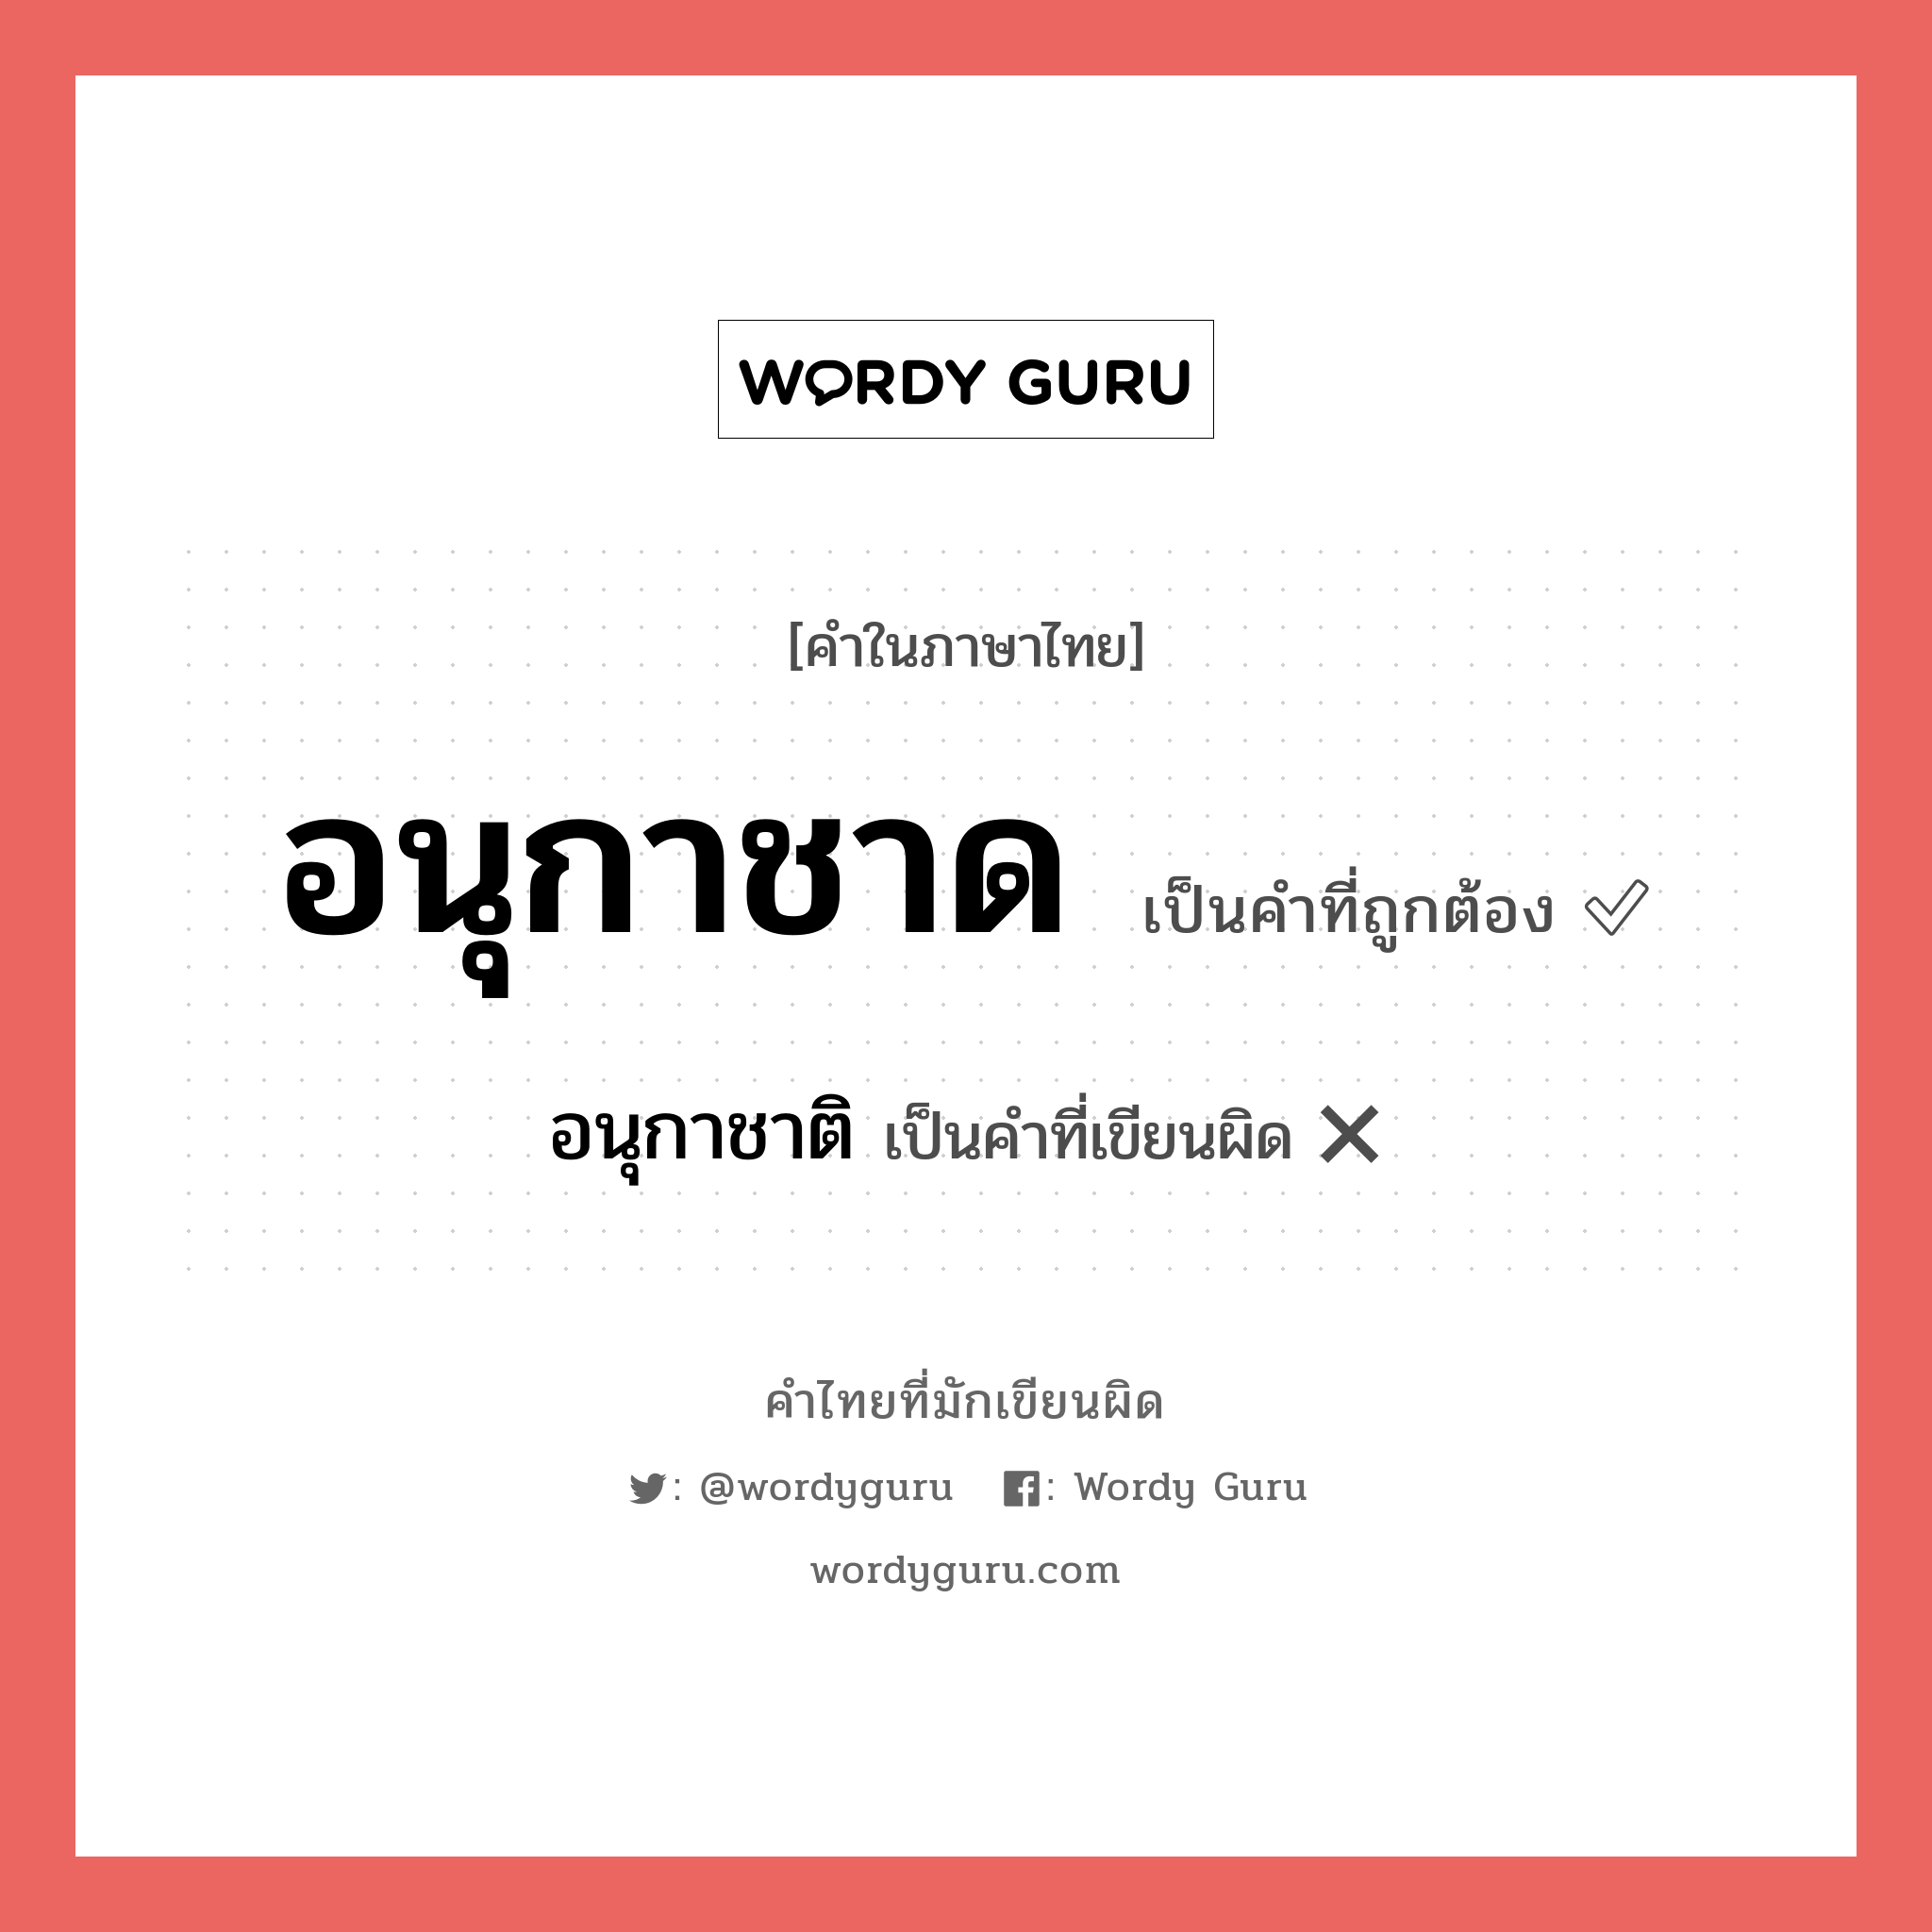 อนุกาชาด หรือ อนุกาชาติ คำไหนเขียนถูก?, คำในภาษาไทยที่มักเขียนผิด อนุกาชาด คำที่ผิด ❌ อนุกาชาติ